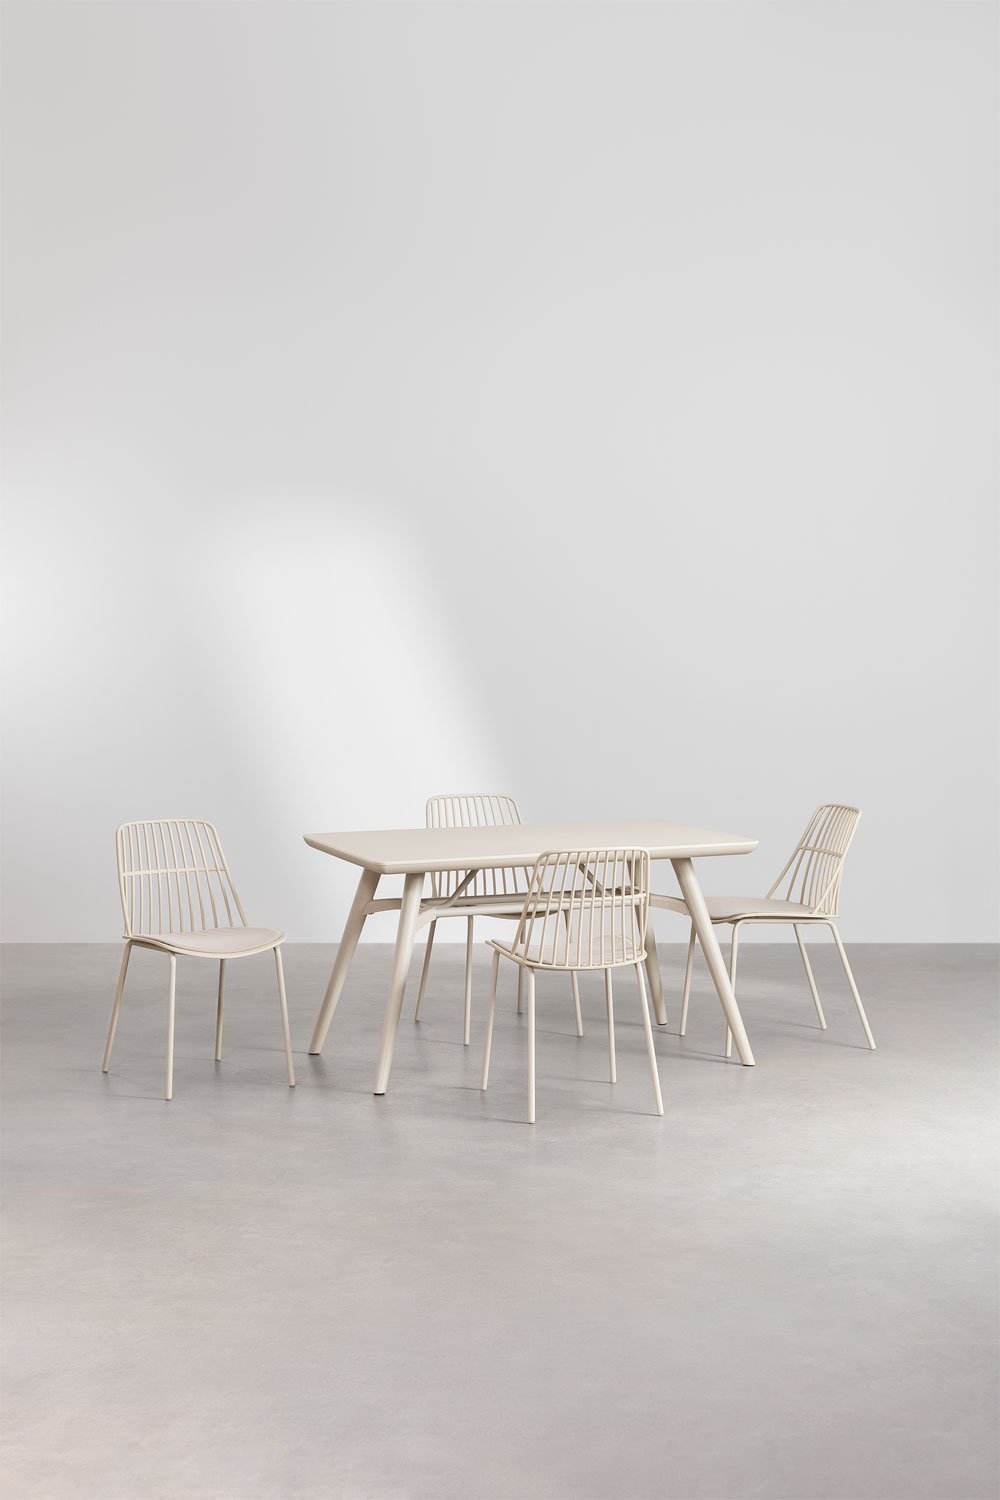 Zestaw prostokątnego stołu Joane (134x78 cm) i 4 krzesła ogrodowe Maeba, obrazek w galerii 1